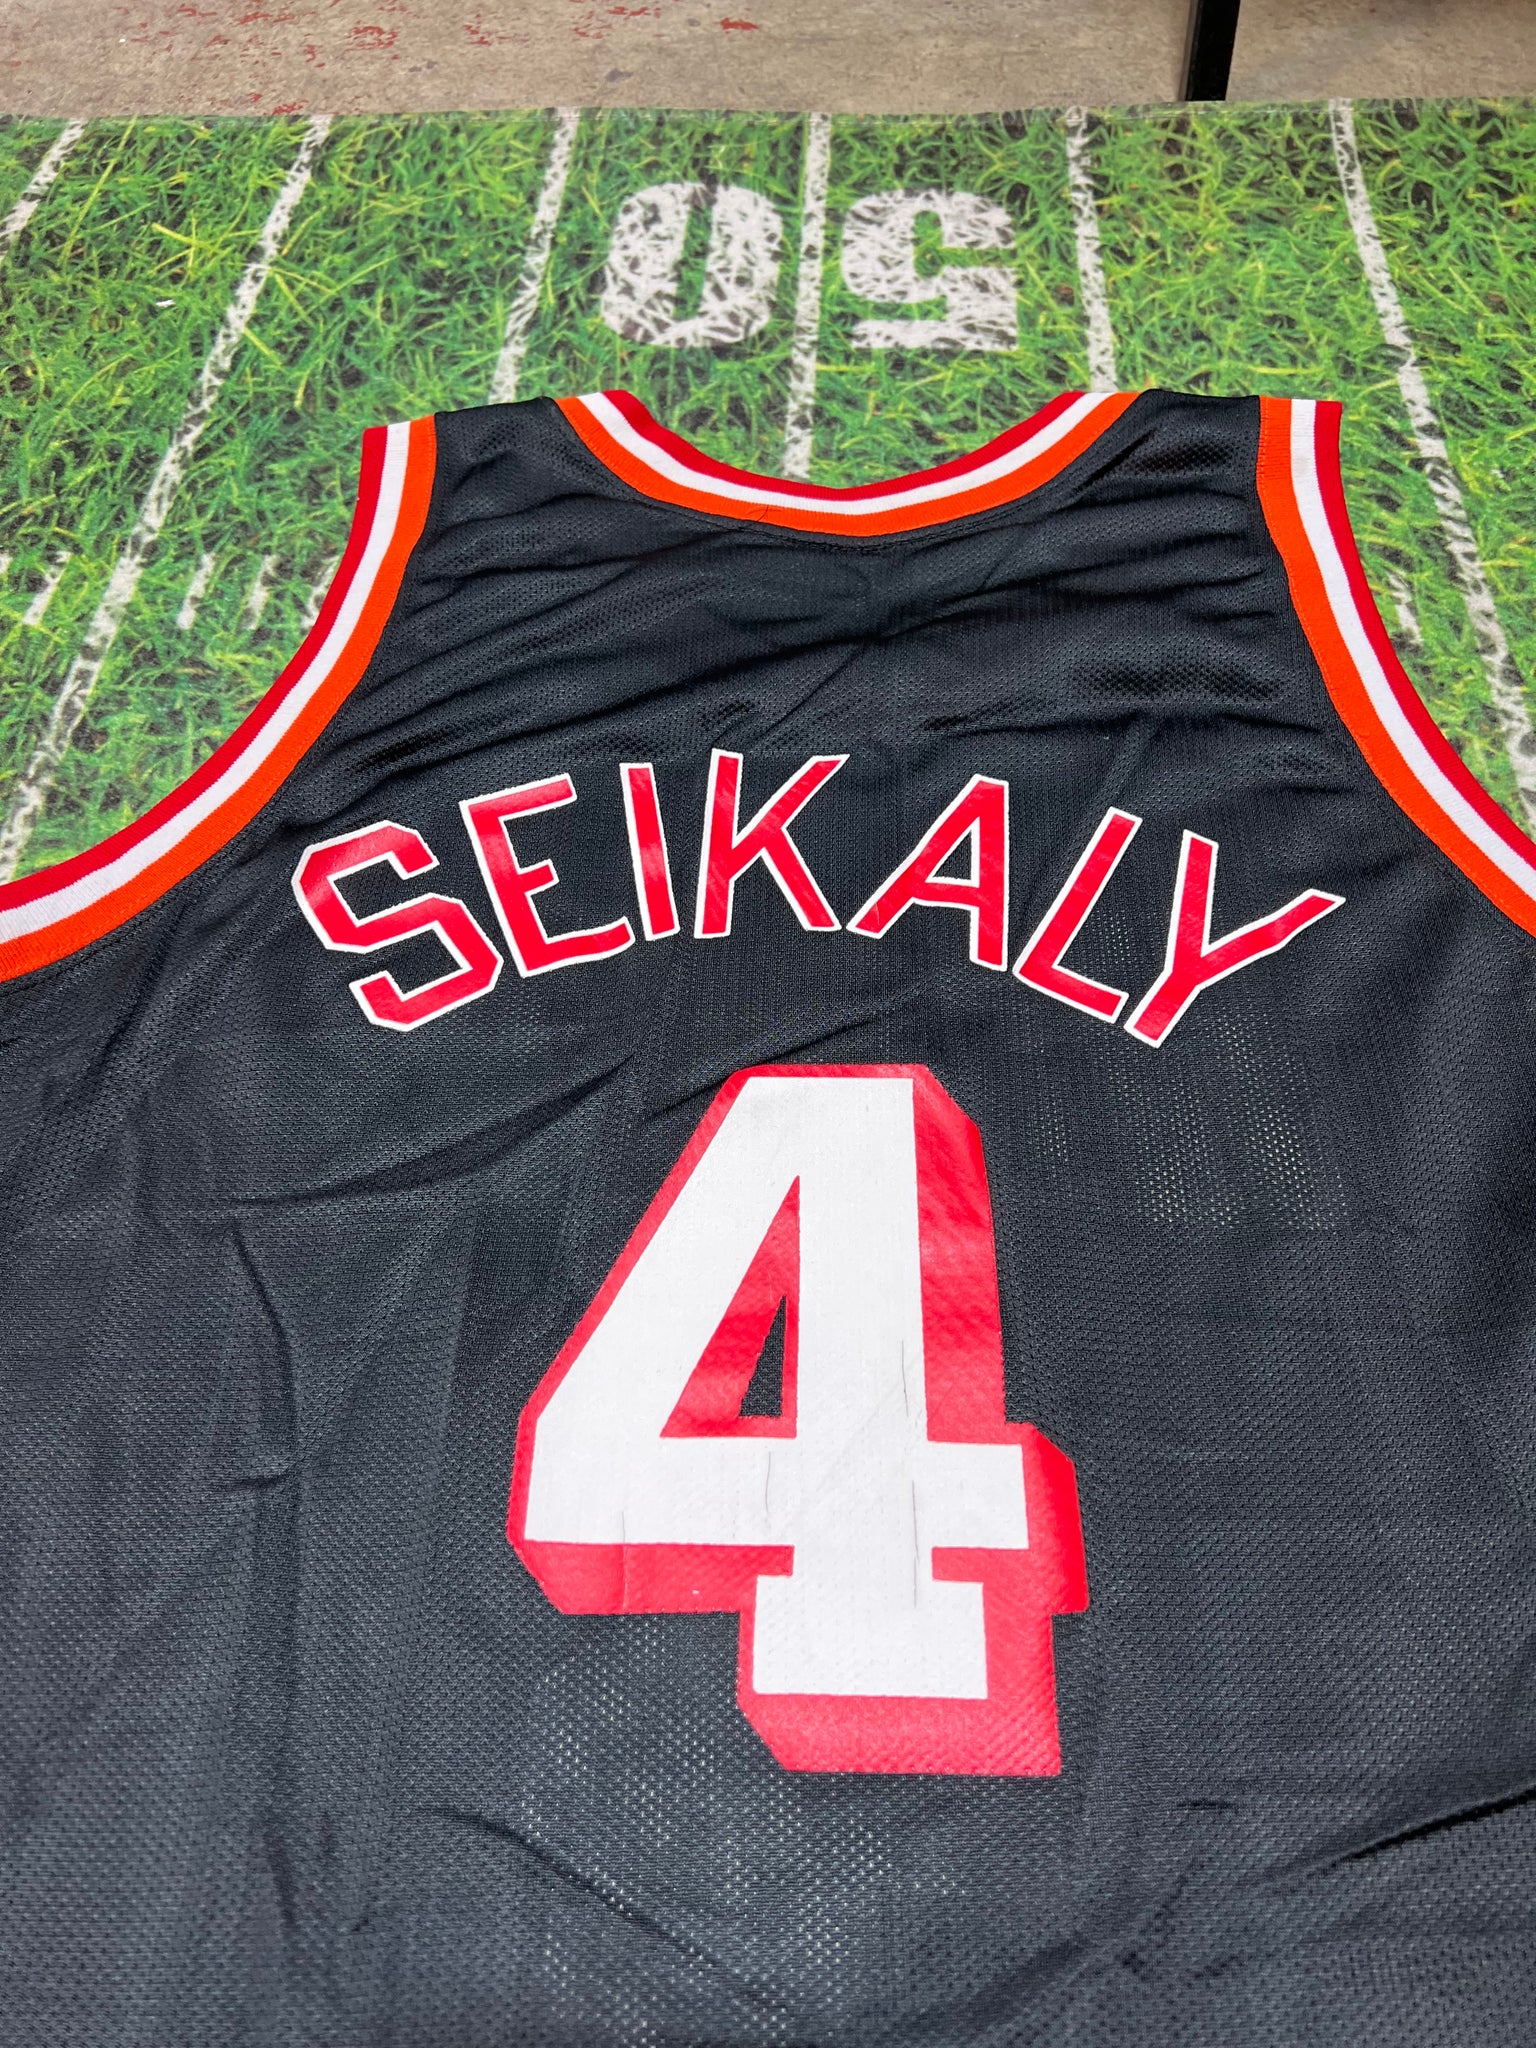 Vintage Rony Seikaly Miami Heat NBA Champion basketball jersey 44 –  Rare_Wear_Attire